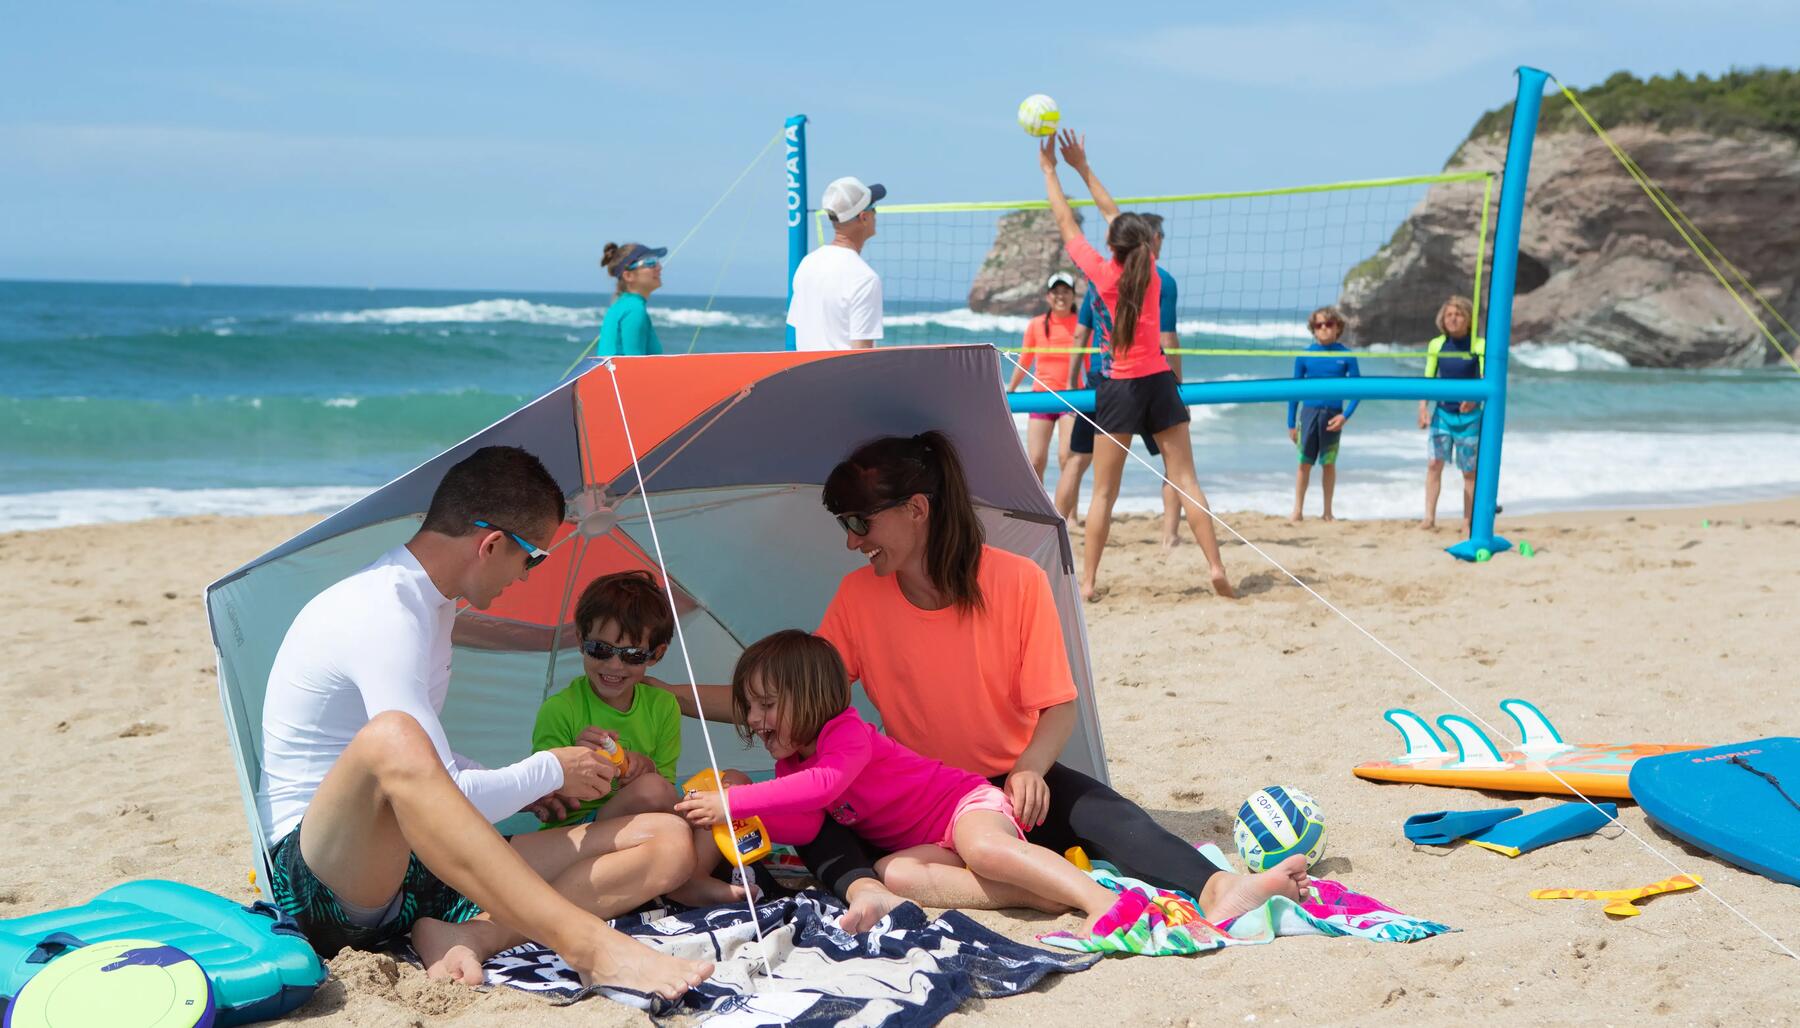 Spannende Sportaktivitäten für den Strand auf einen Blick zusammengefasst! Finde hier Aktivitäten gegen Langeweile am Strand.